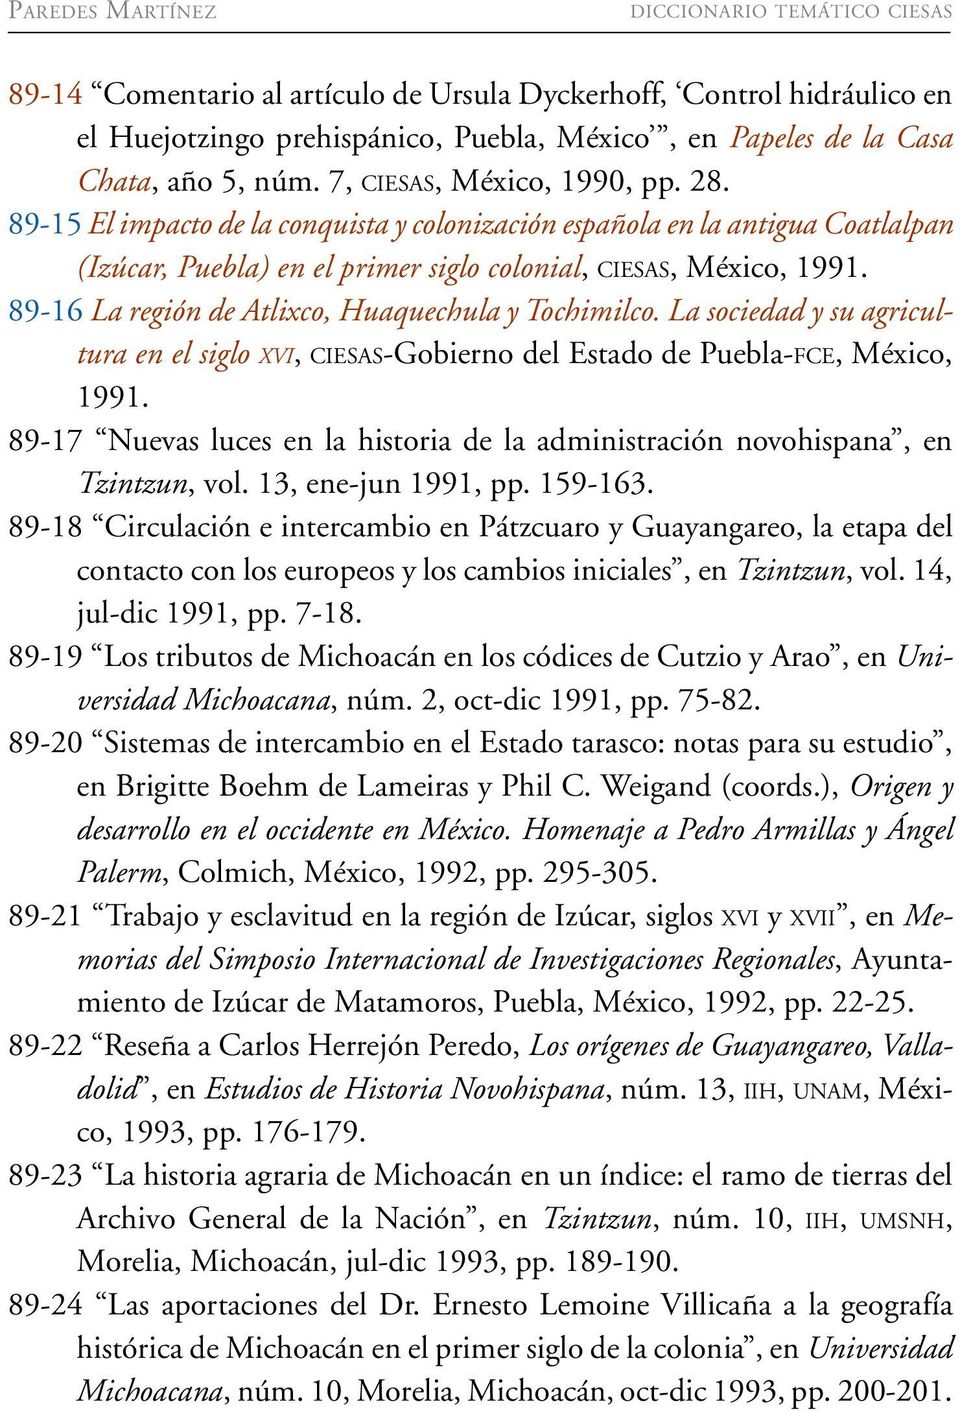 89-16 La región de Atlixco, Huaquechula y Tochimilco. La sociedad y su agricultura en el siglo XVI, CIESAS-Gobierno del Estado de Puebla-FCE, México, 1991.